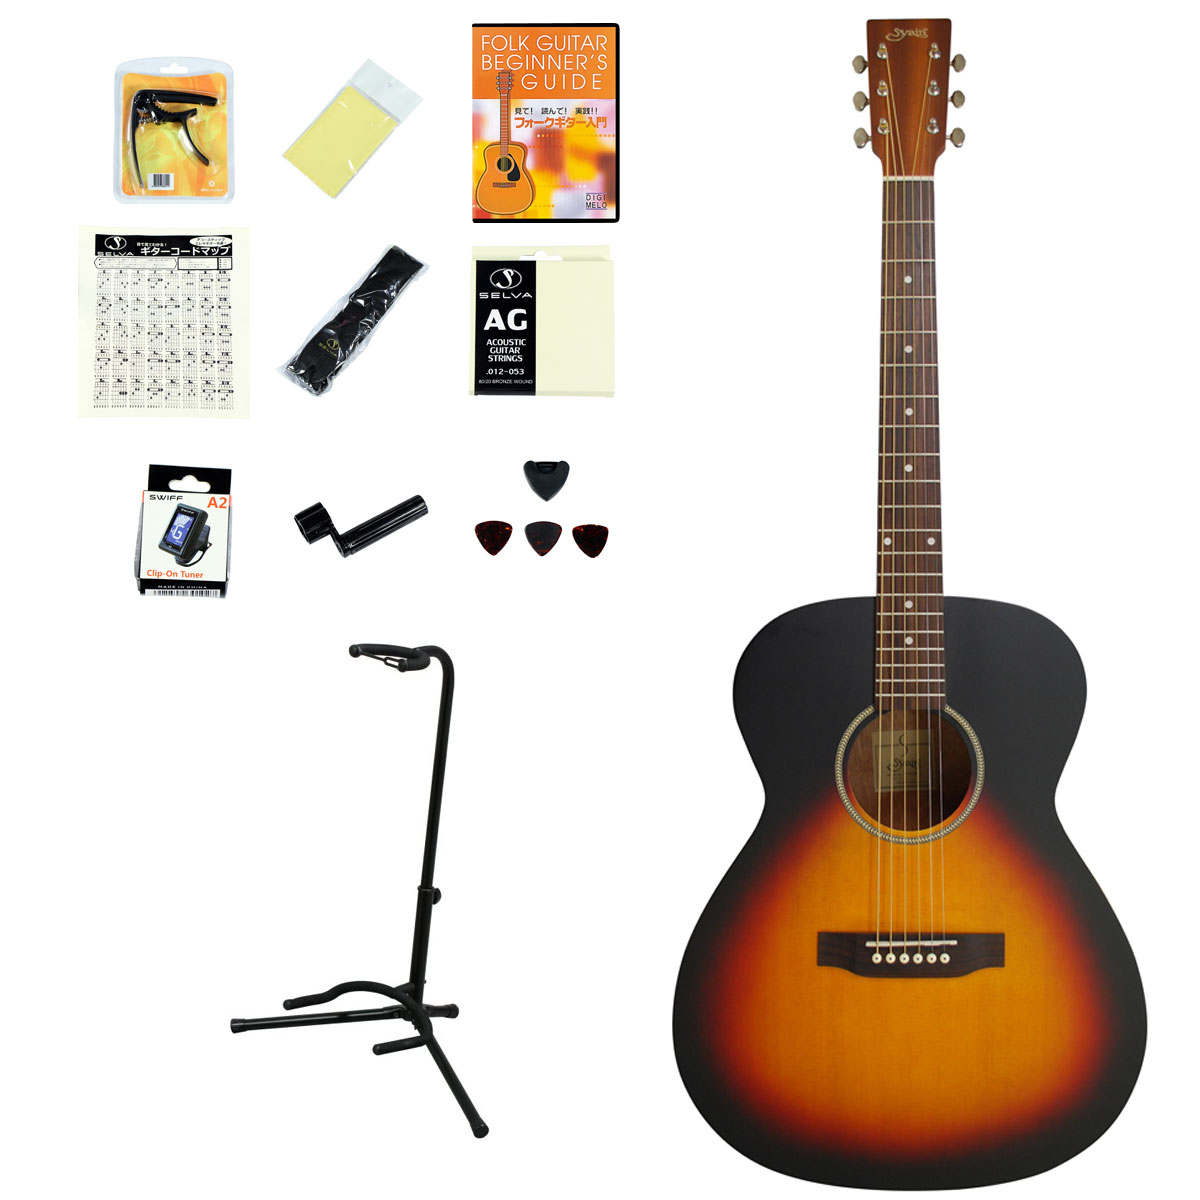 ヤイリ Limited Series アコースティックギター YD-04 BLK ブラック ドレッドノートタイプ アコギ 初心者  送料無料